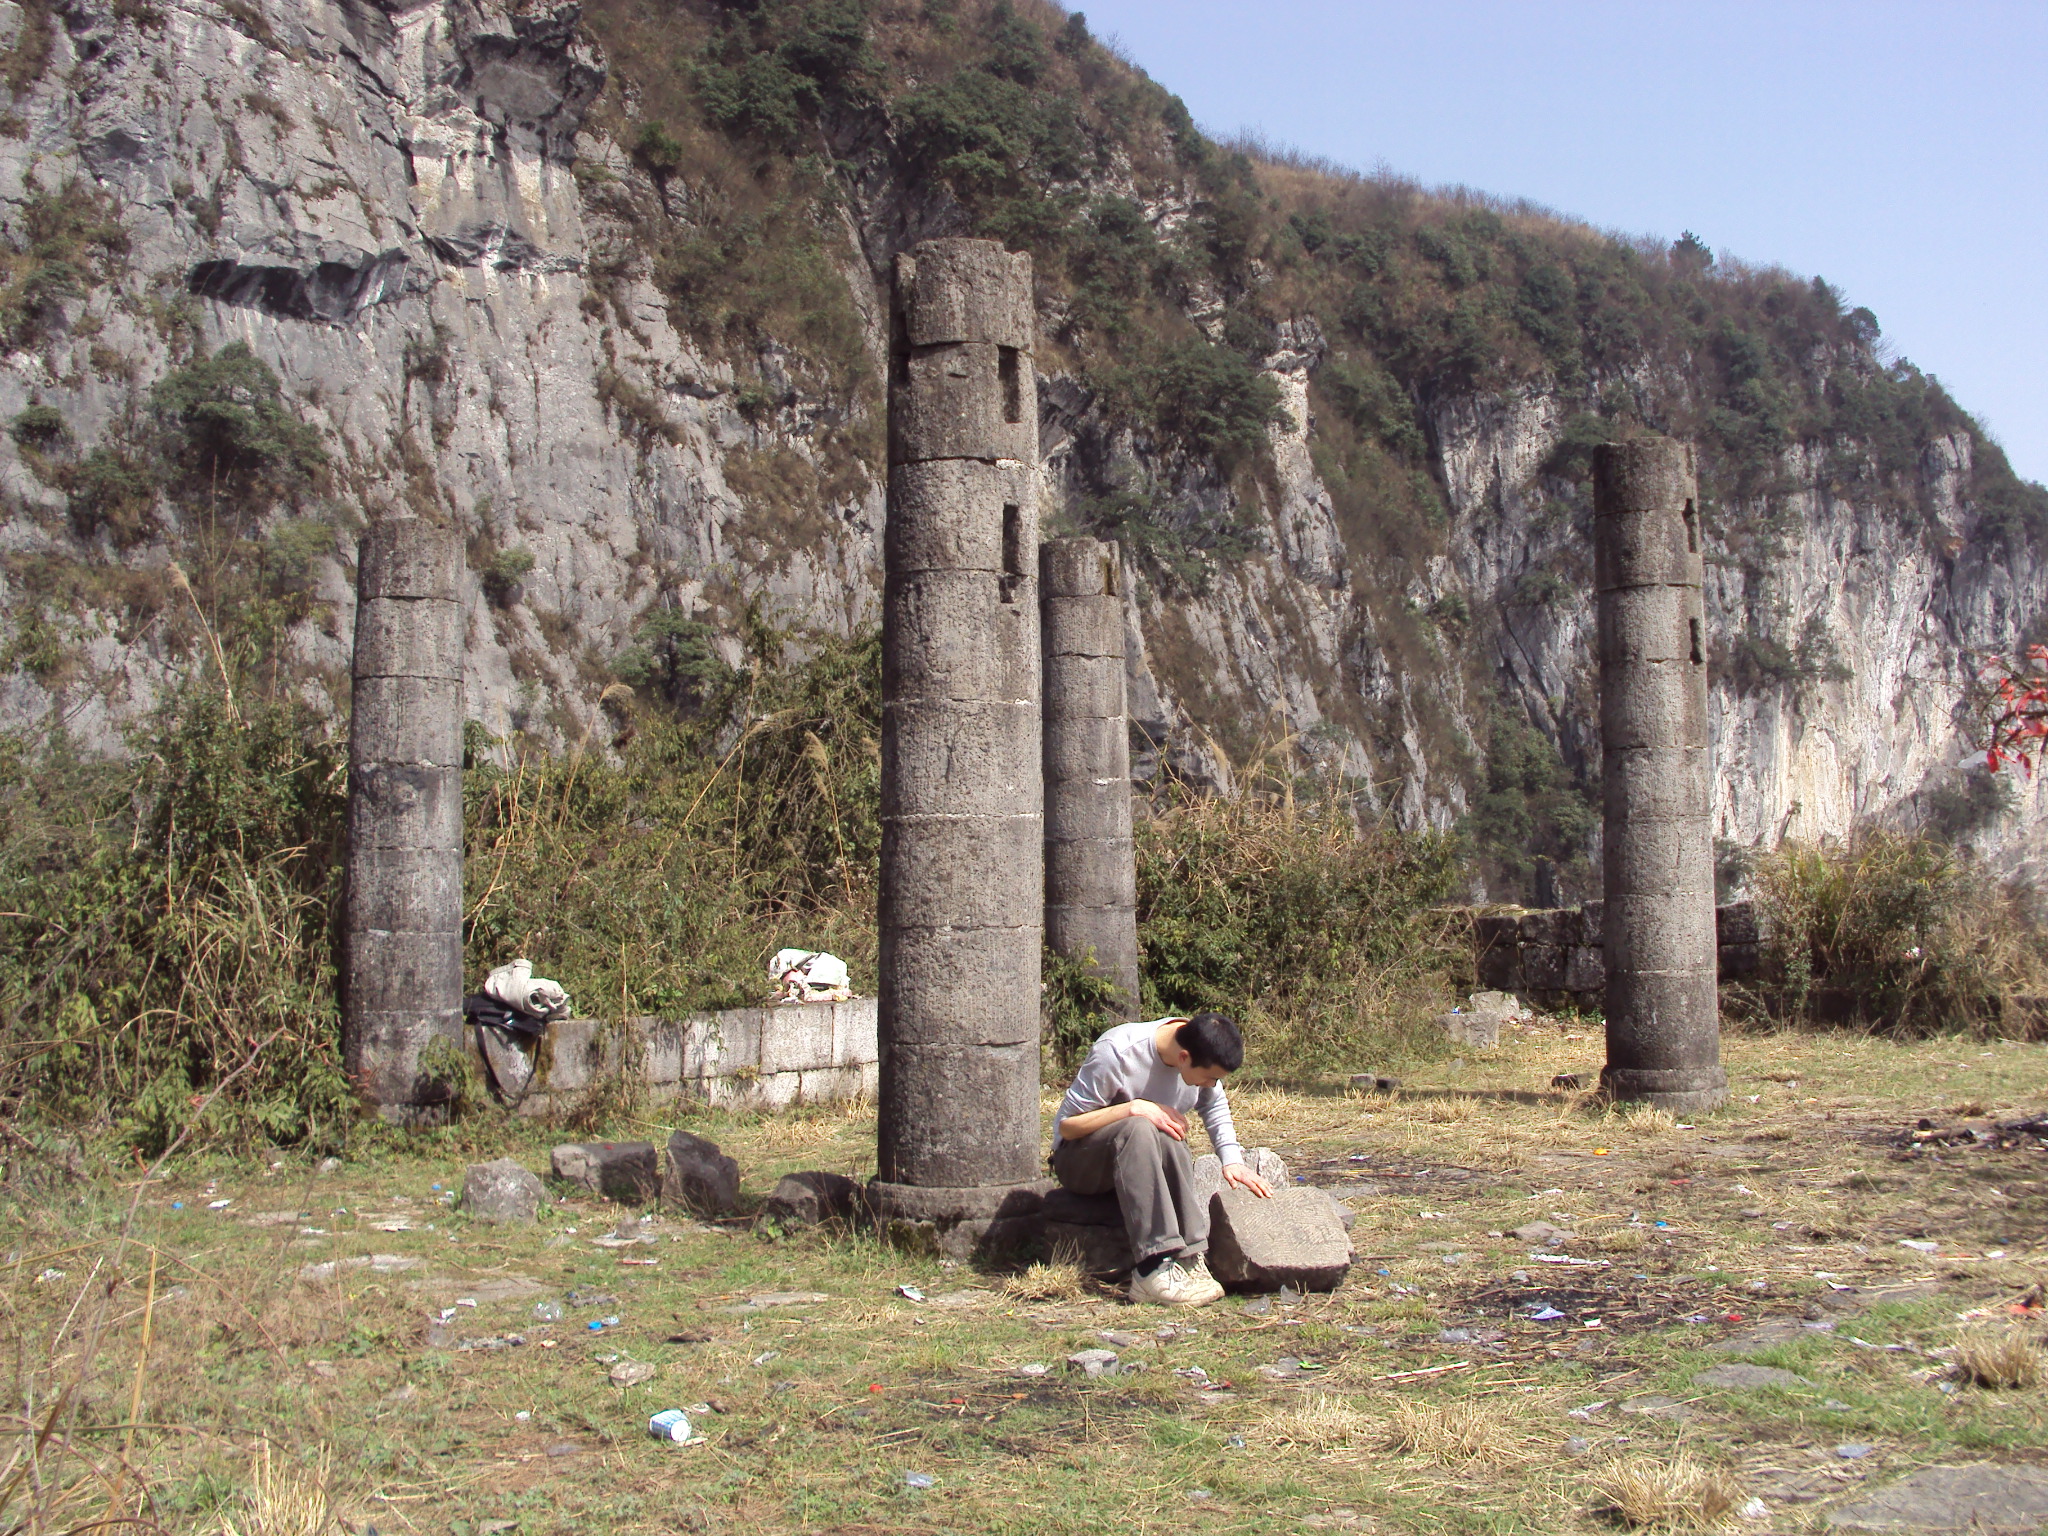 古廟僅存四根石柱-西北方向攝